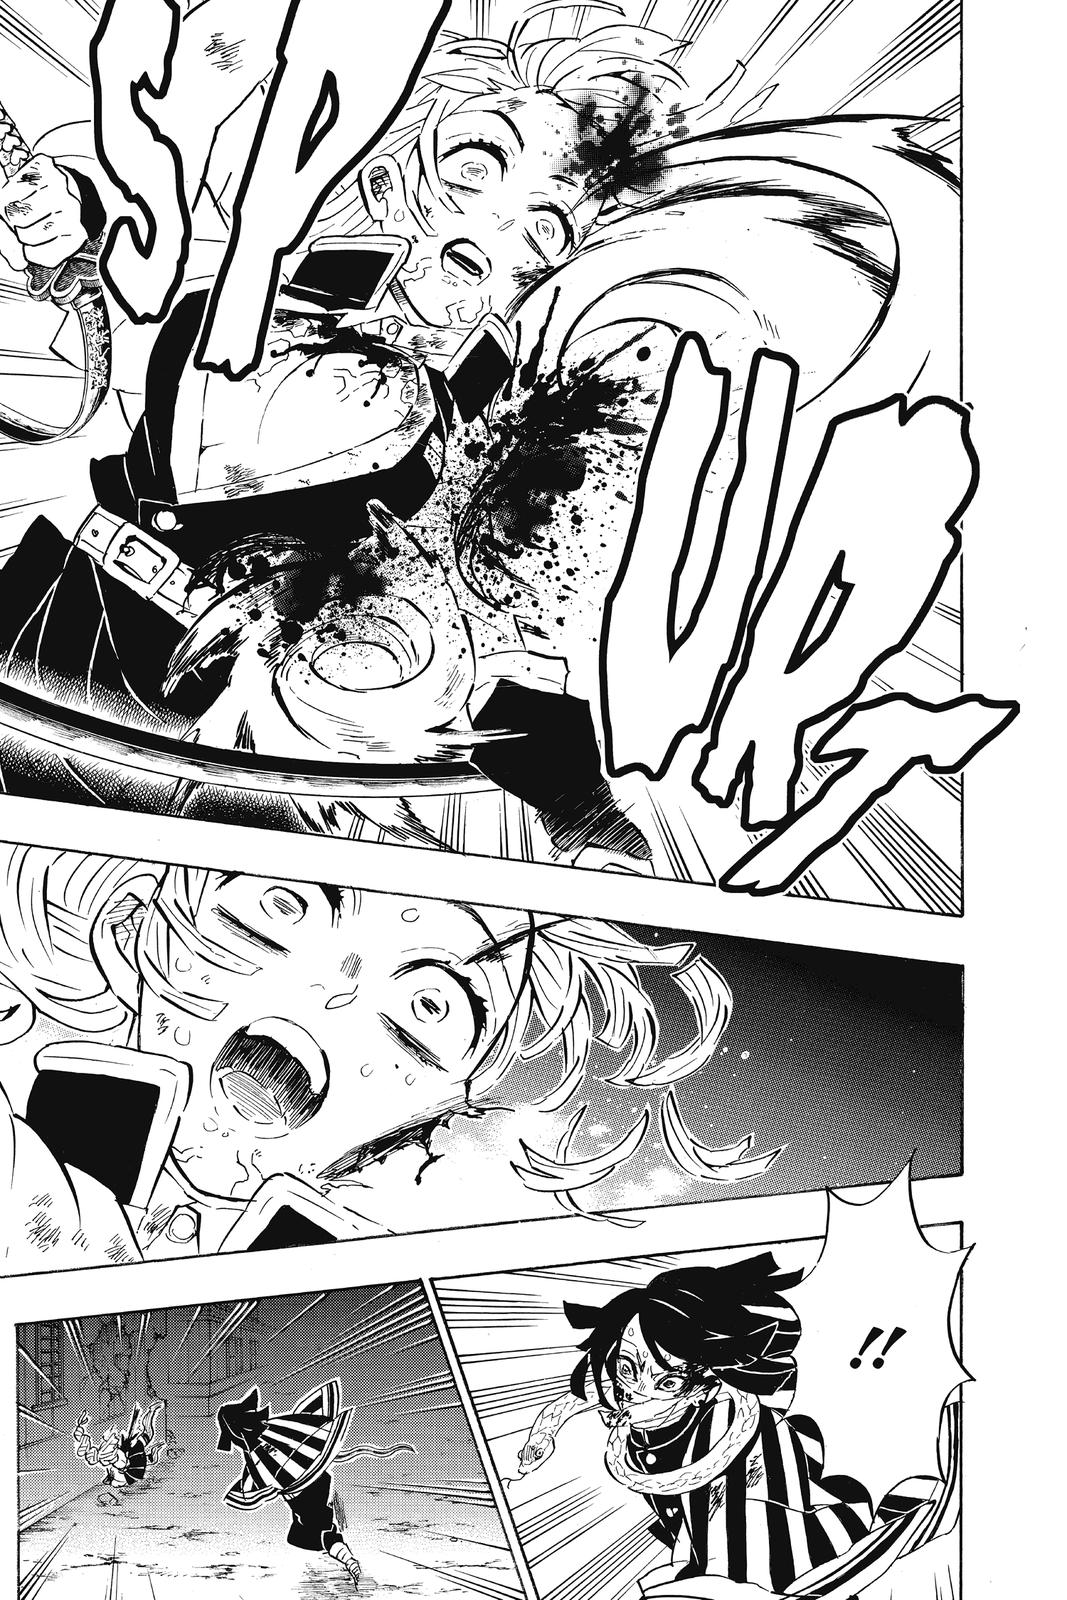 Demon Slayer Manga Manga Chapter - 188 - image 10